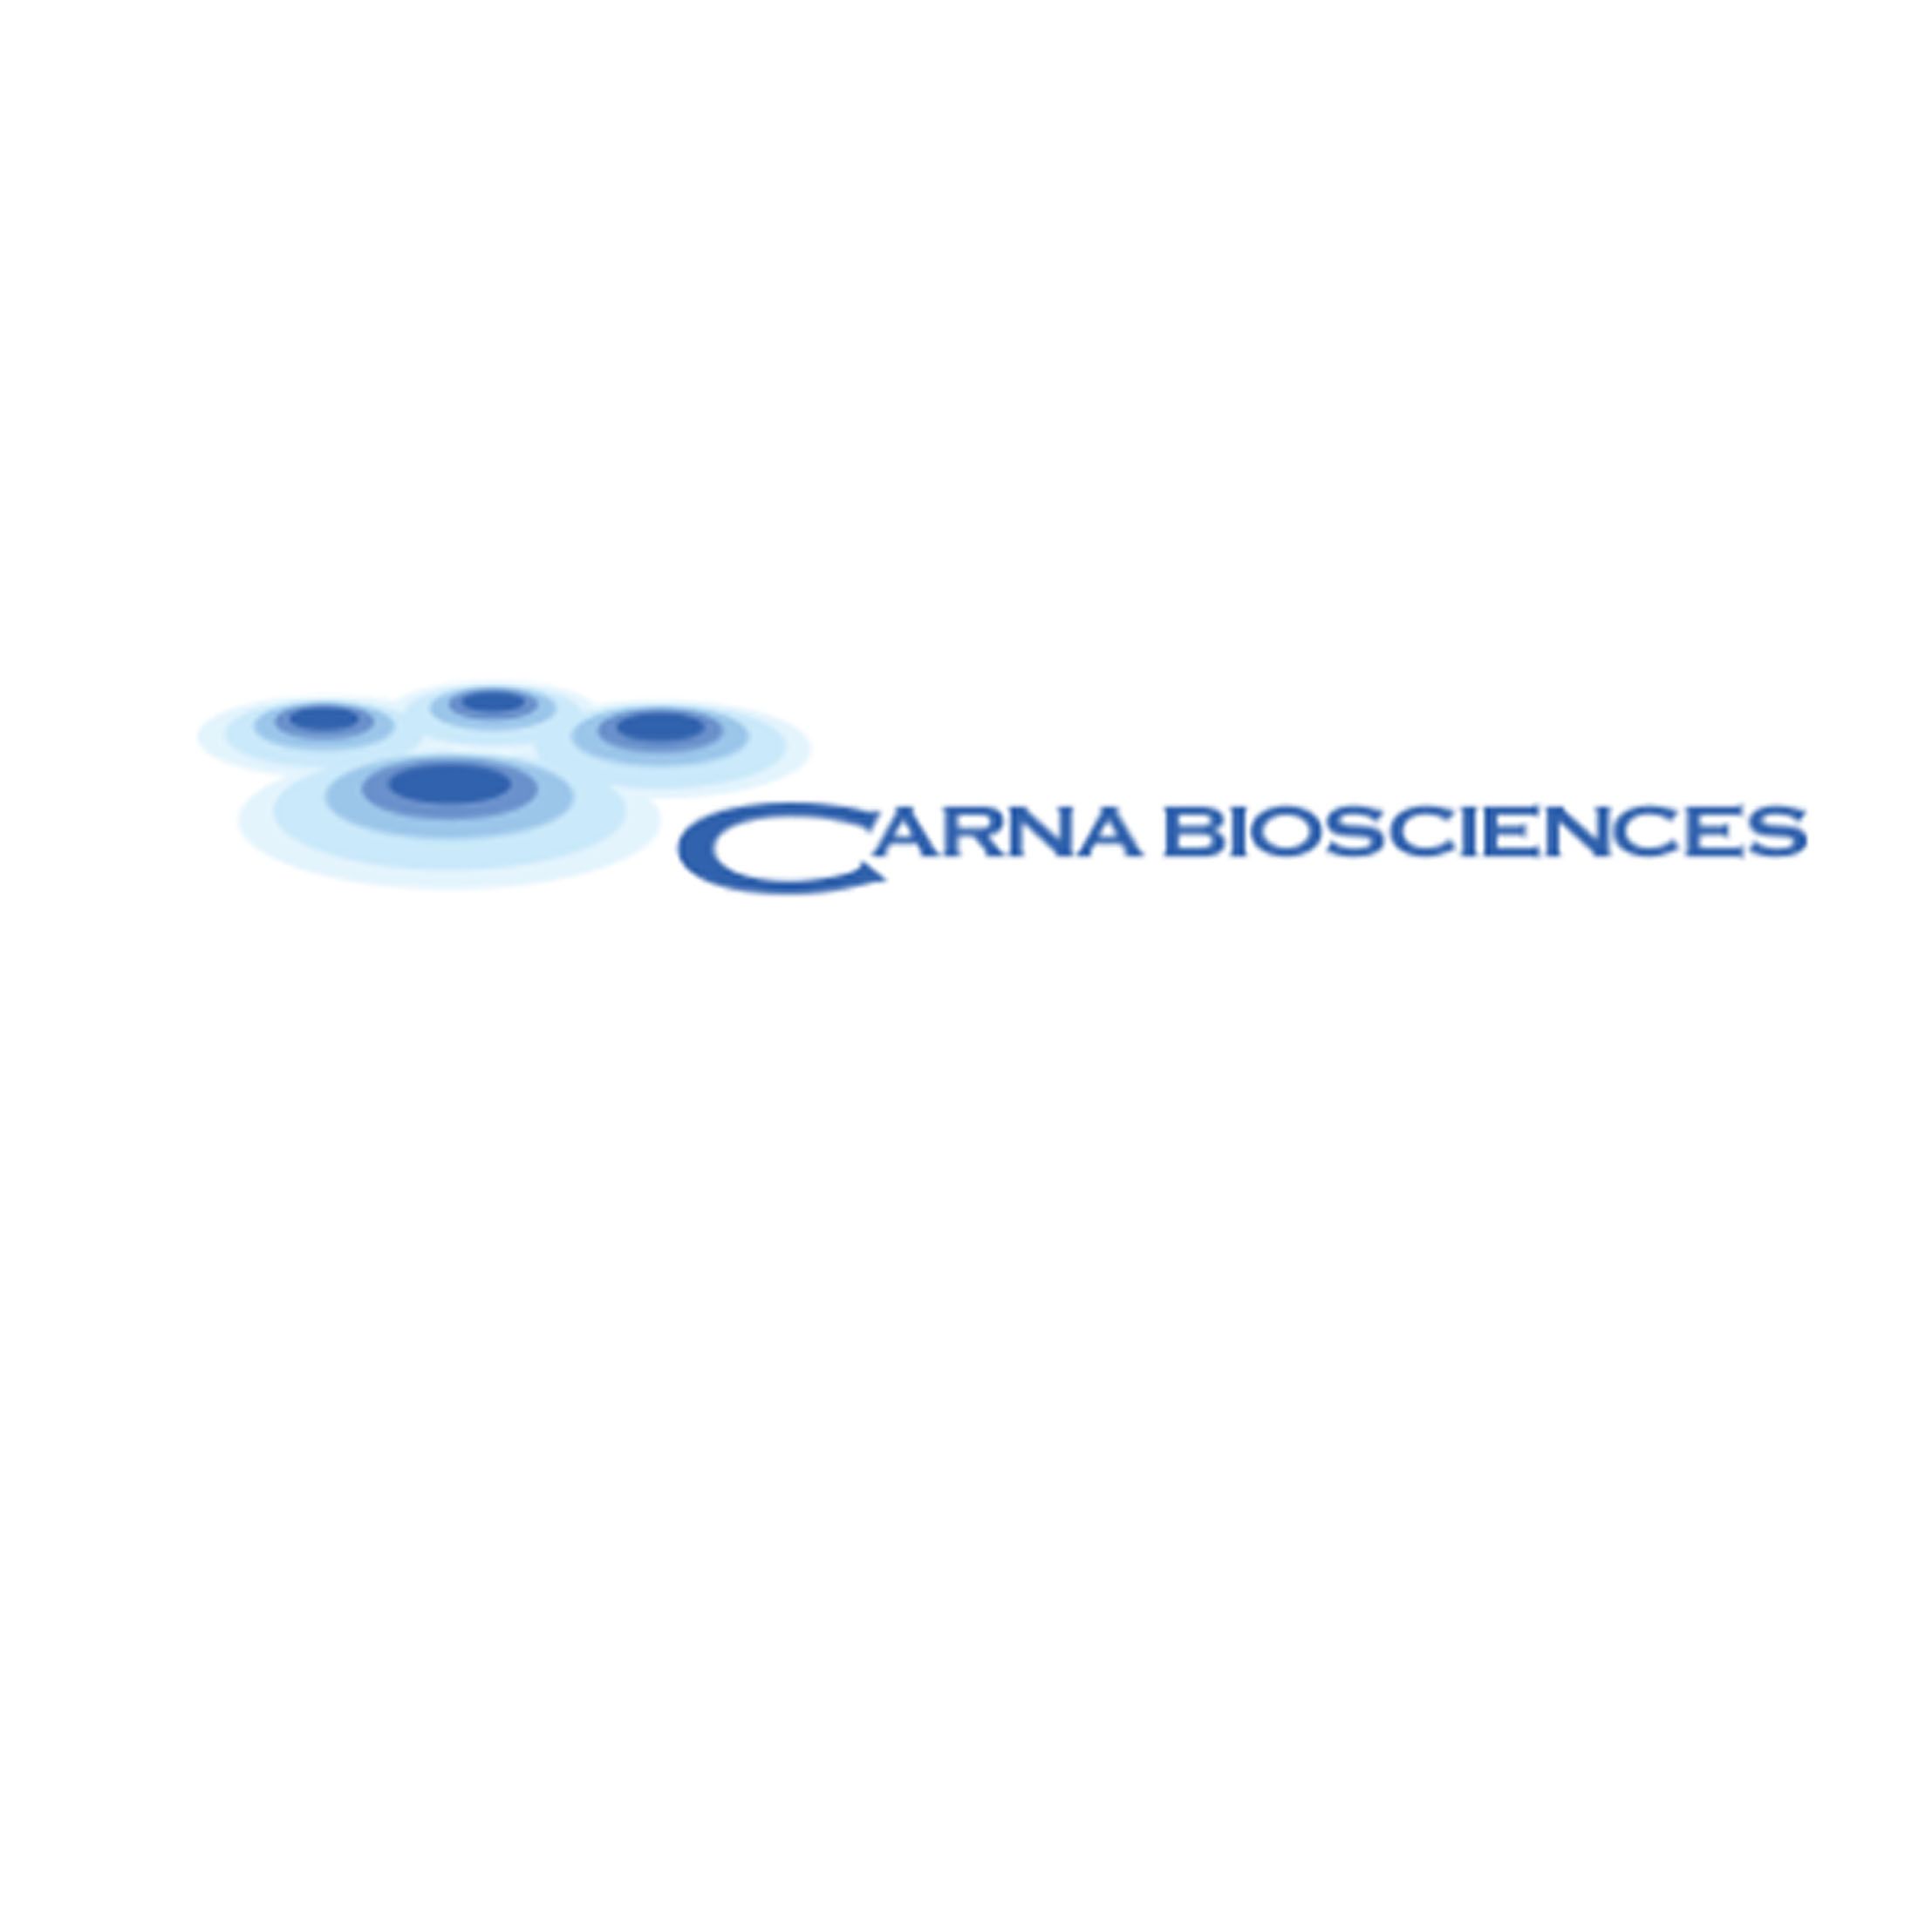 Carna生物素化激酶、蛋白质-蛋白质相互作用的检测、激酶蛋白测定试剂盒